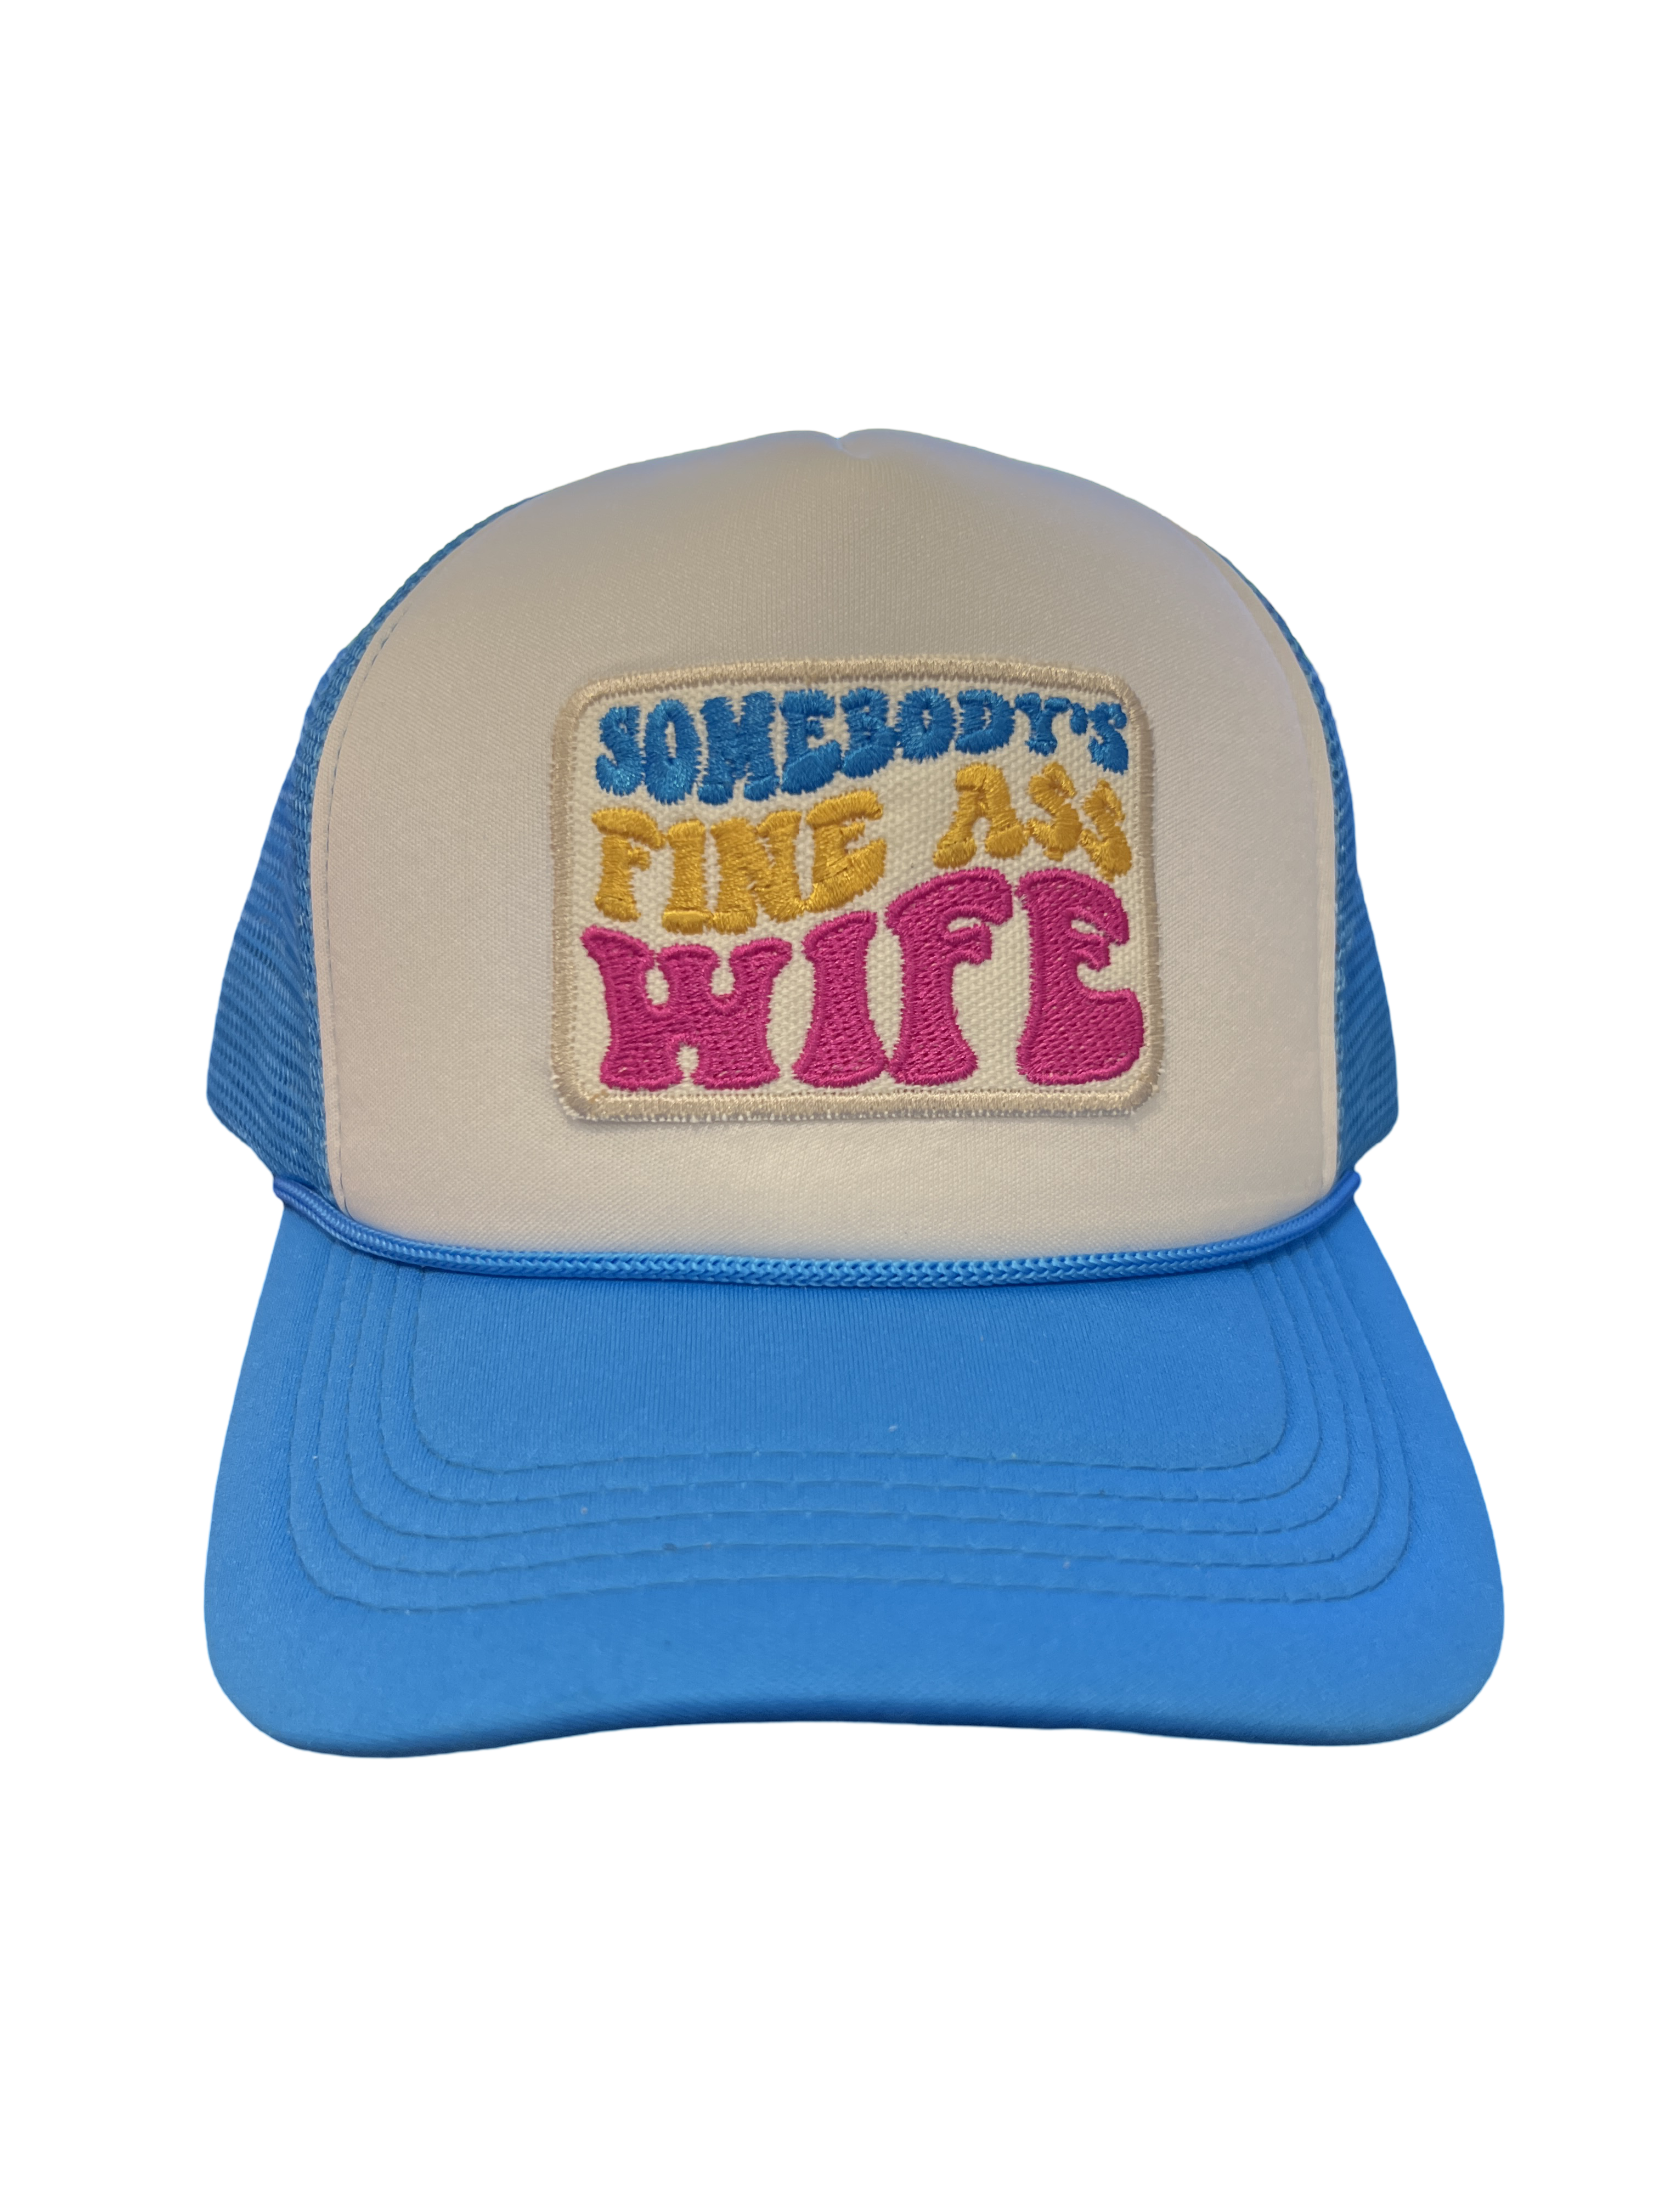 Trucker Hat Foam "Somebody's Fine Ass Wife"